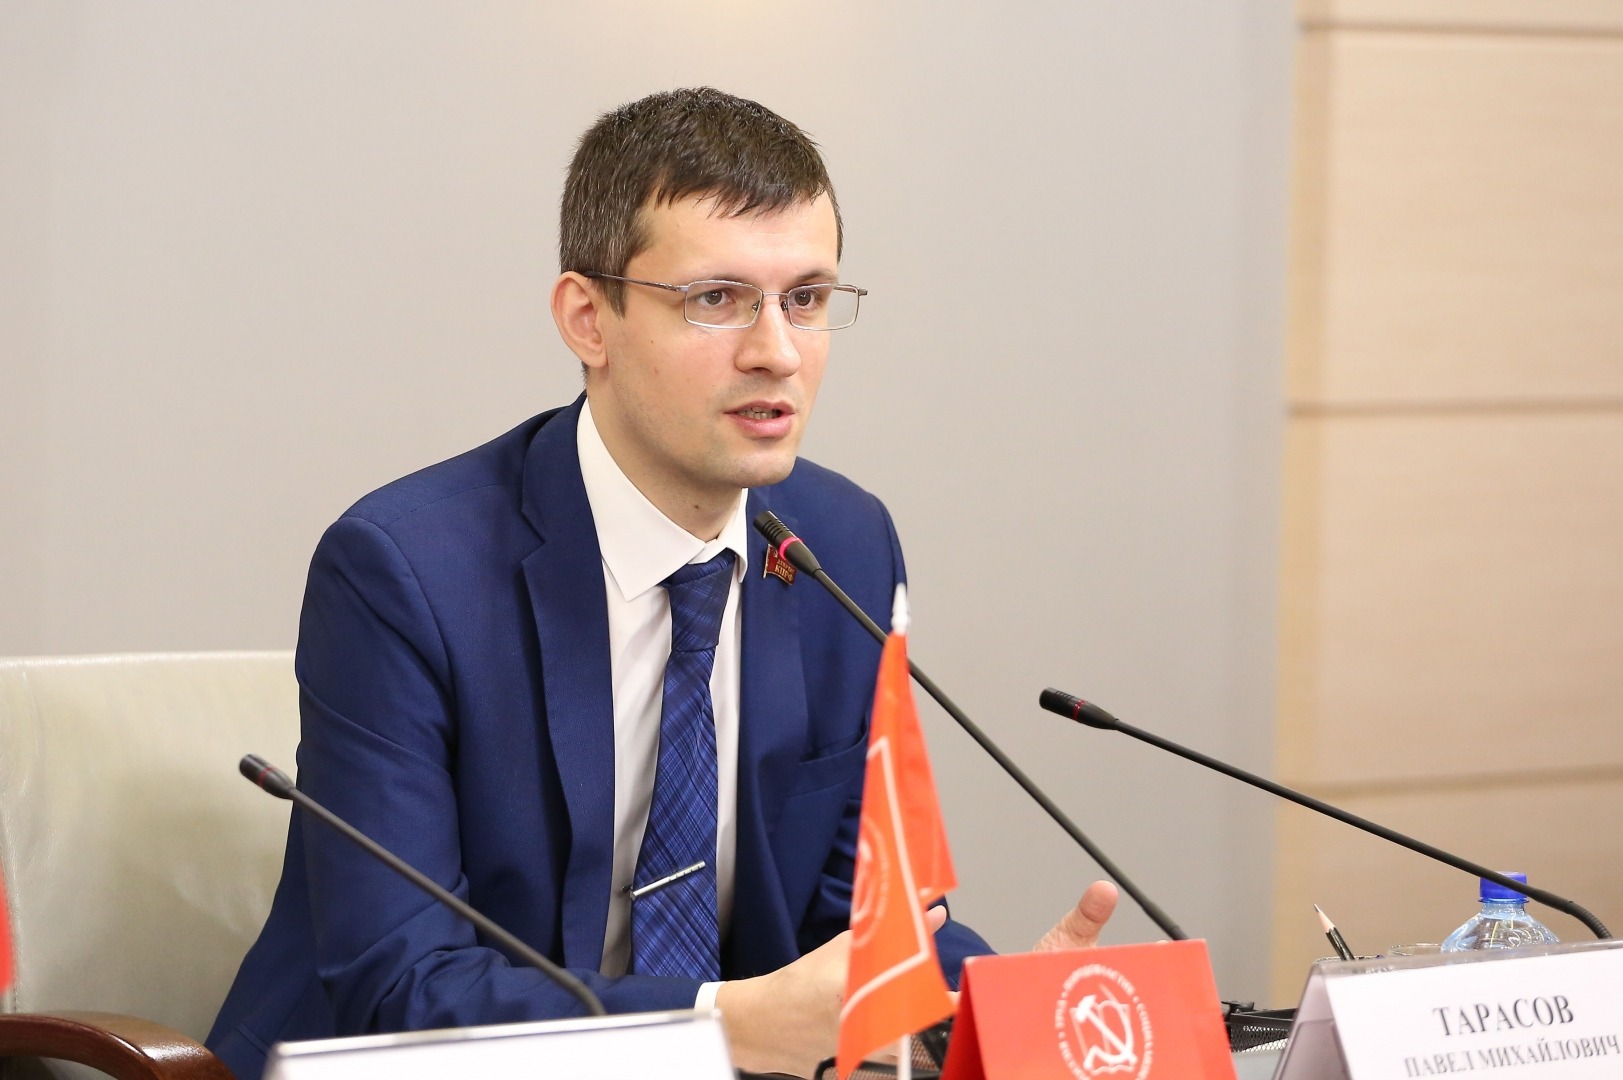 Павел Тарасов: «Награждать сторонников профашистского идеолога Ильина — недопустимо!»